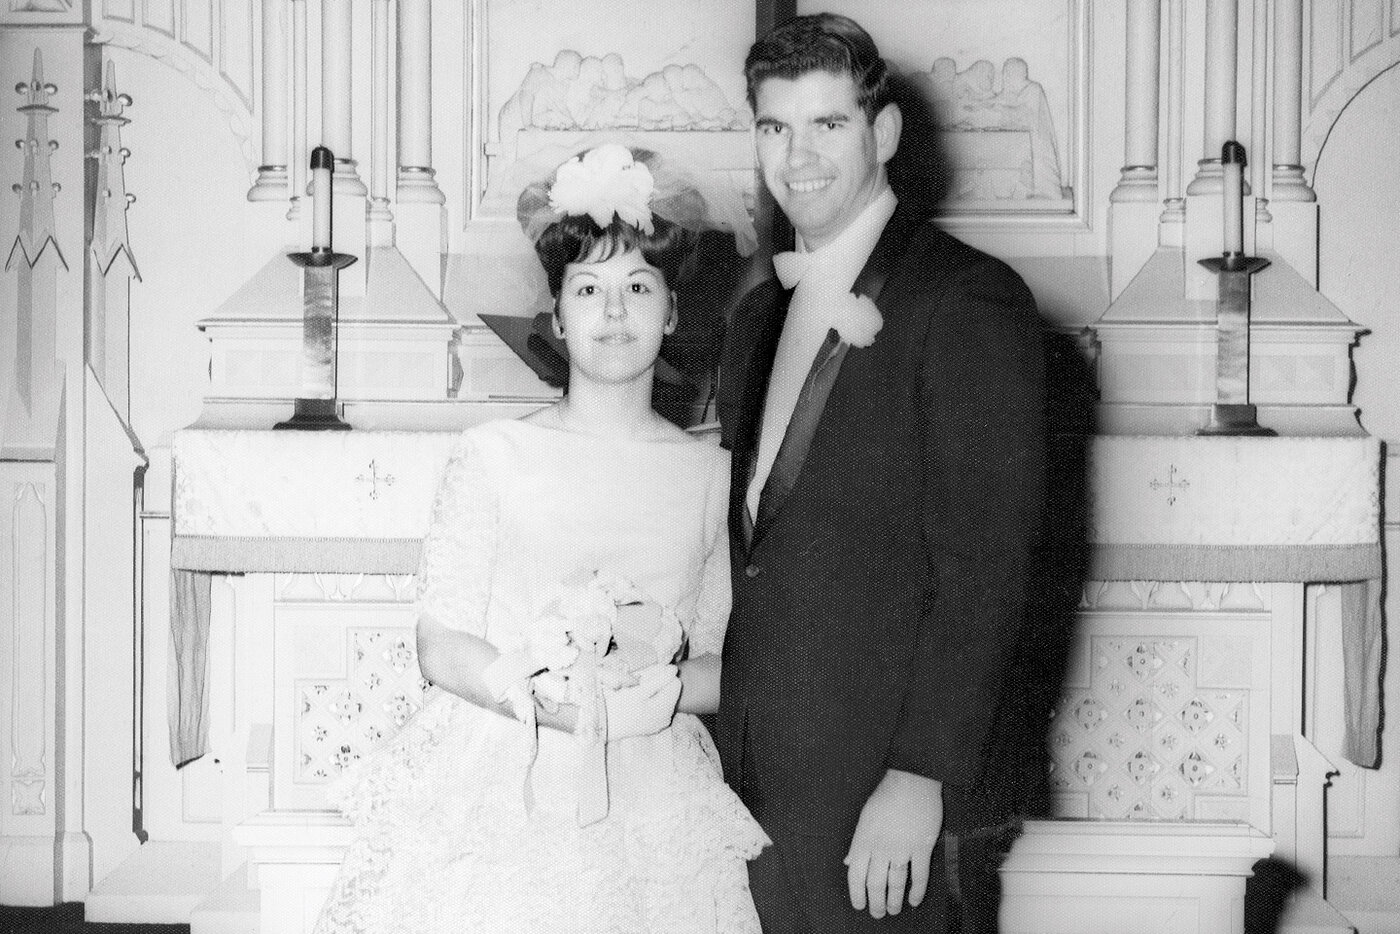 Hochzeitsbild von Dave und Joyce Meyer - glückliche Ehe seit über 50 Jahren